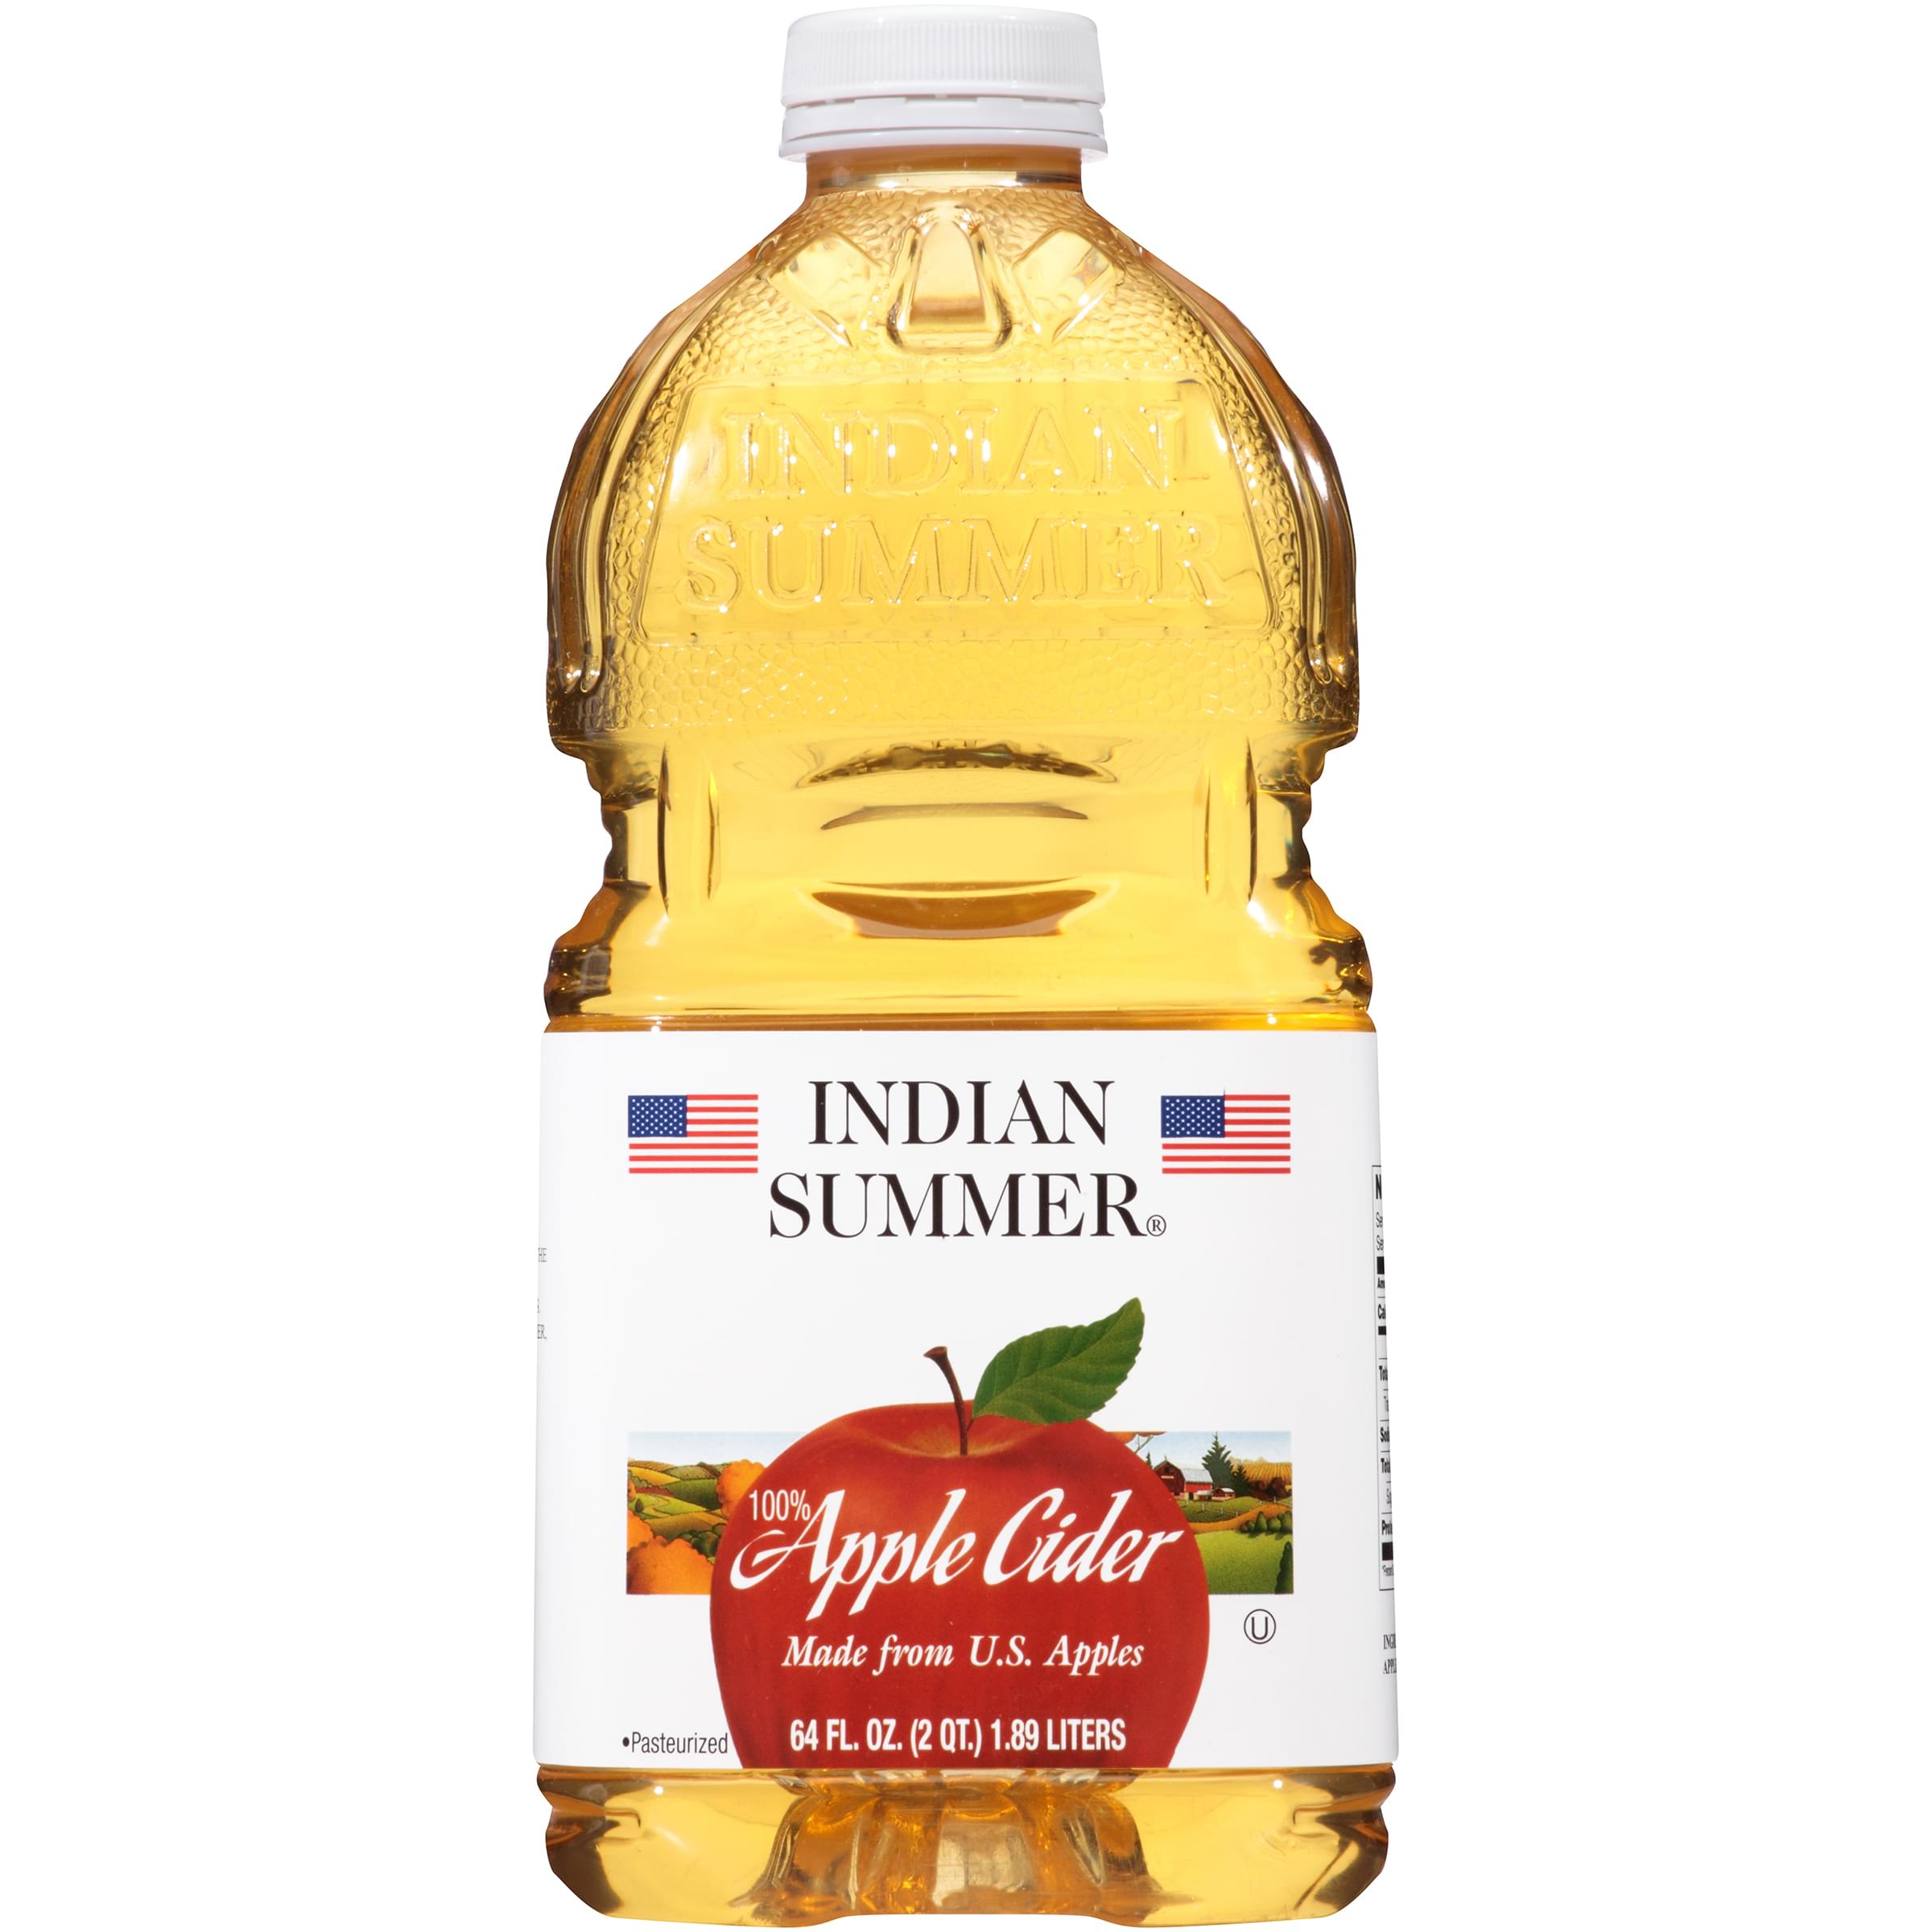 Scape Goat Low Sugar Apple Cider in 2020 Sugar apples, Cider, Apple